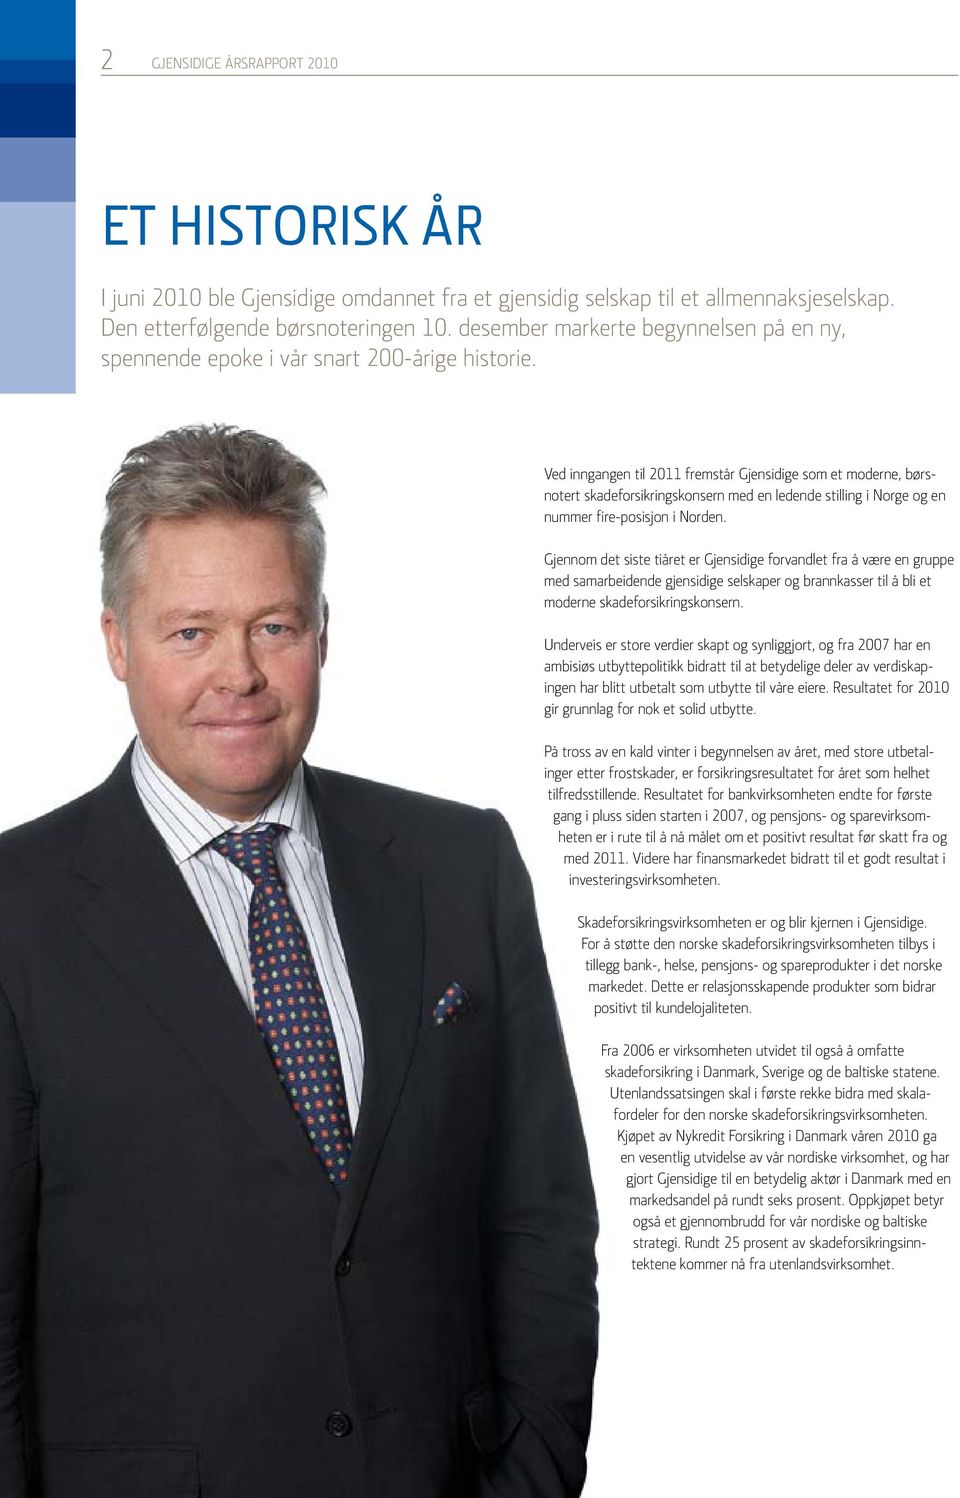 Ved inngangen til 2011 fremstår Gjensidige som et moderne, børsnotert skadeforsikringskonsern med en ledende stilling i Norge og en nummer fire-posisjon i Norden.